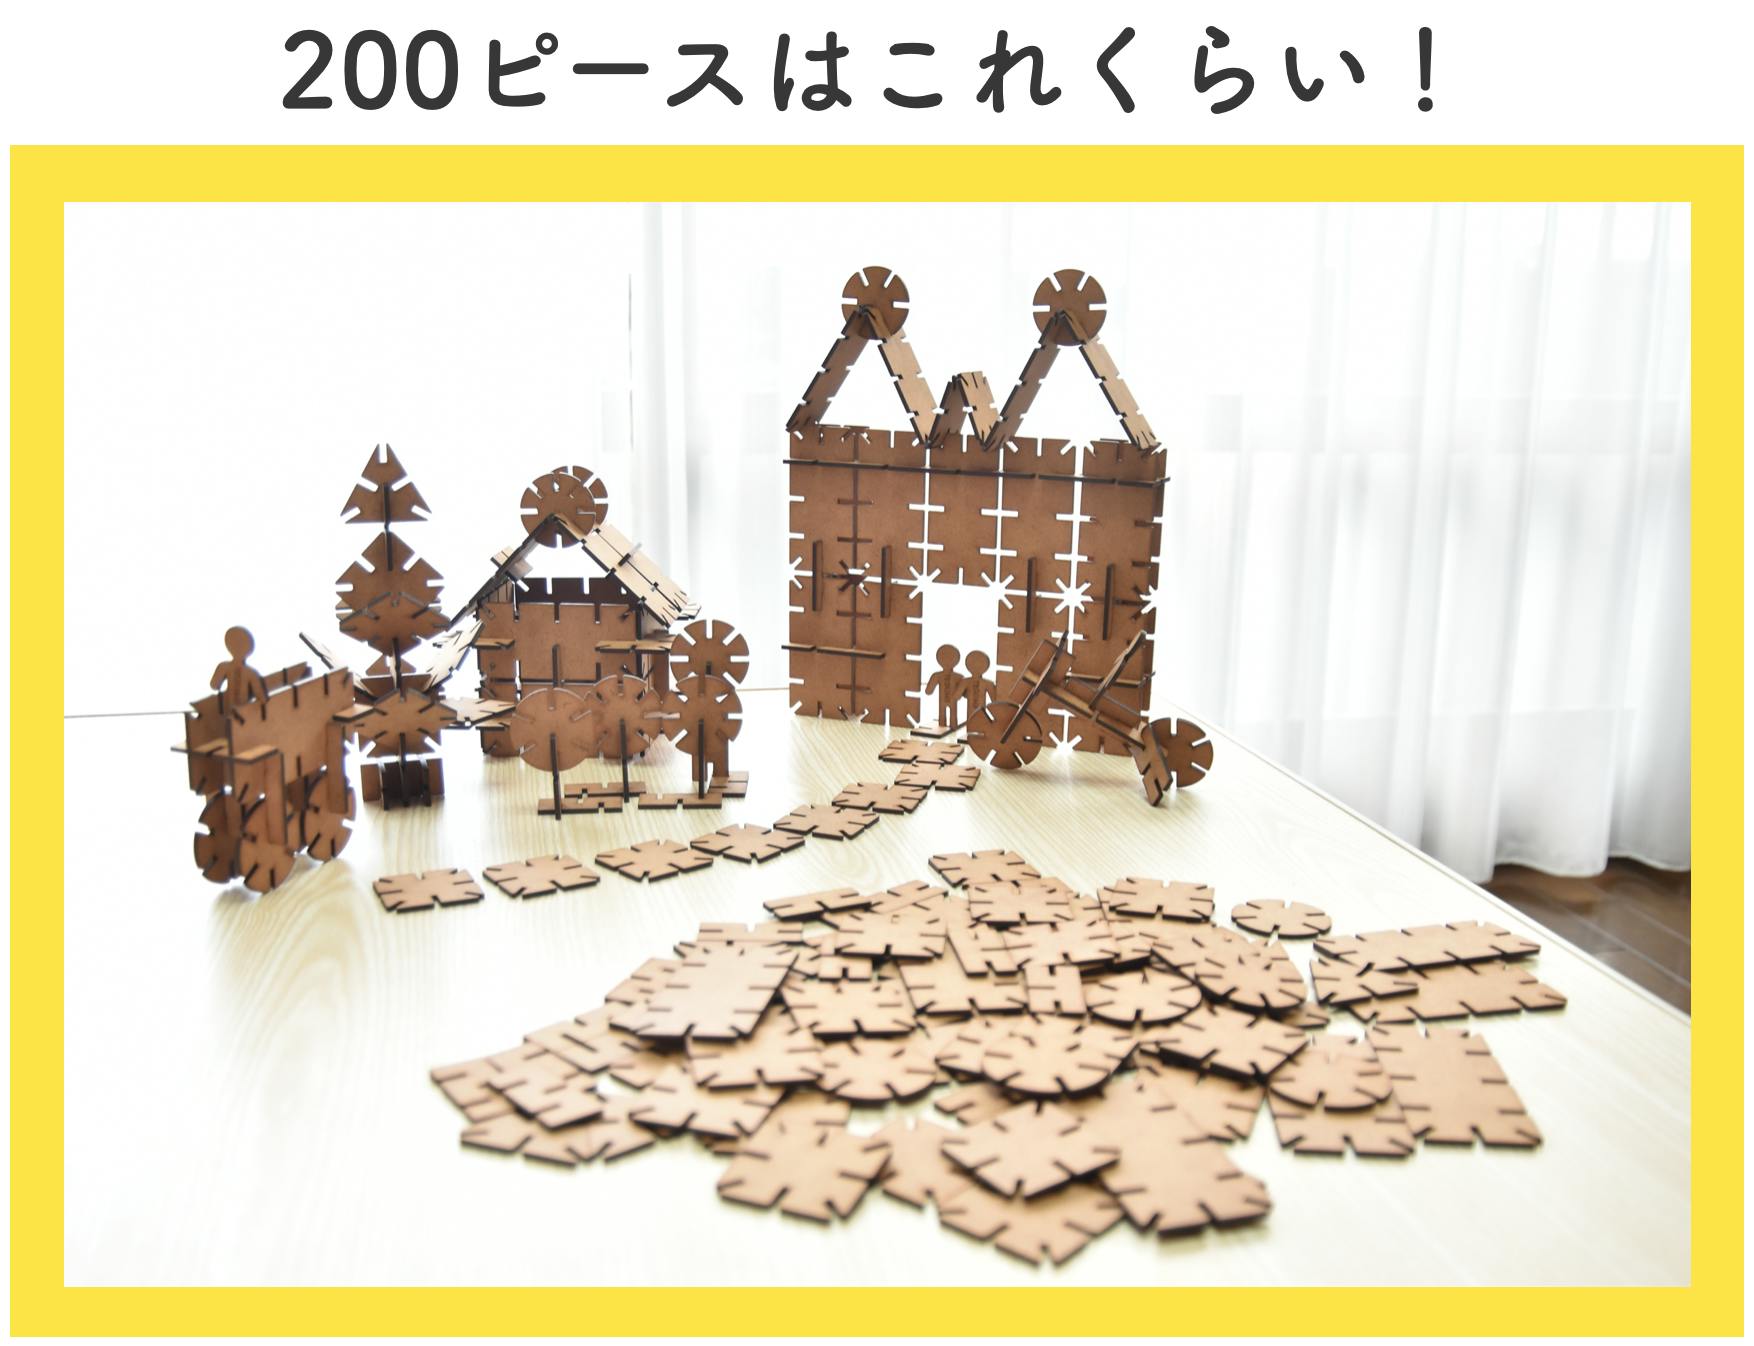 名大生が開発した木製組み立て知育玩具！テグミーを日本中に届けたい